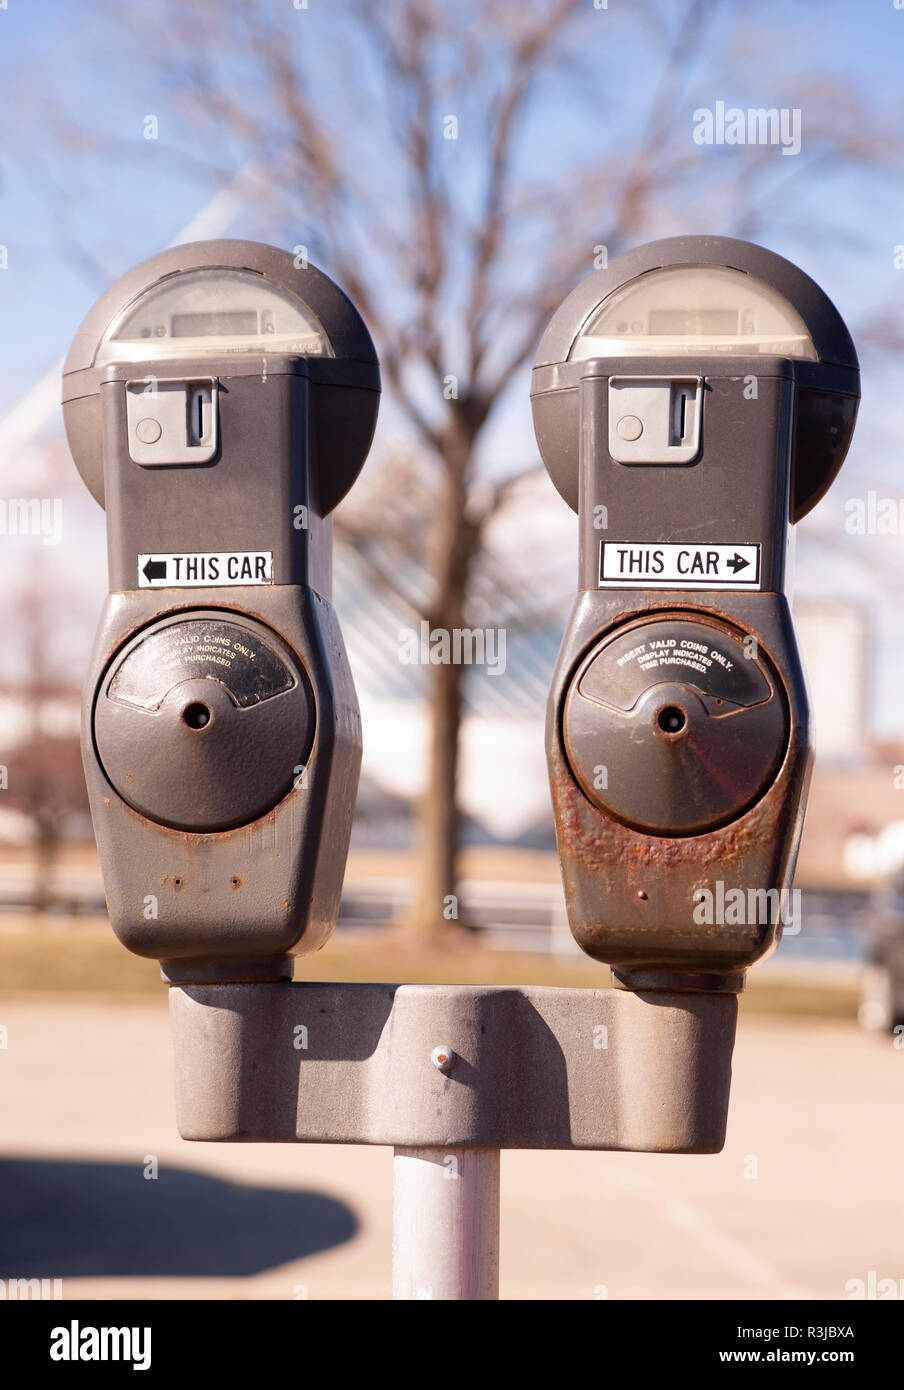 Ein Pole mit zwei münzbetriebene Parkuhren steht im Winter auf der Straße Stockfoto